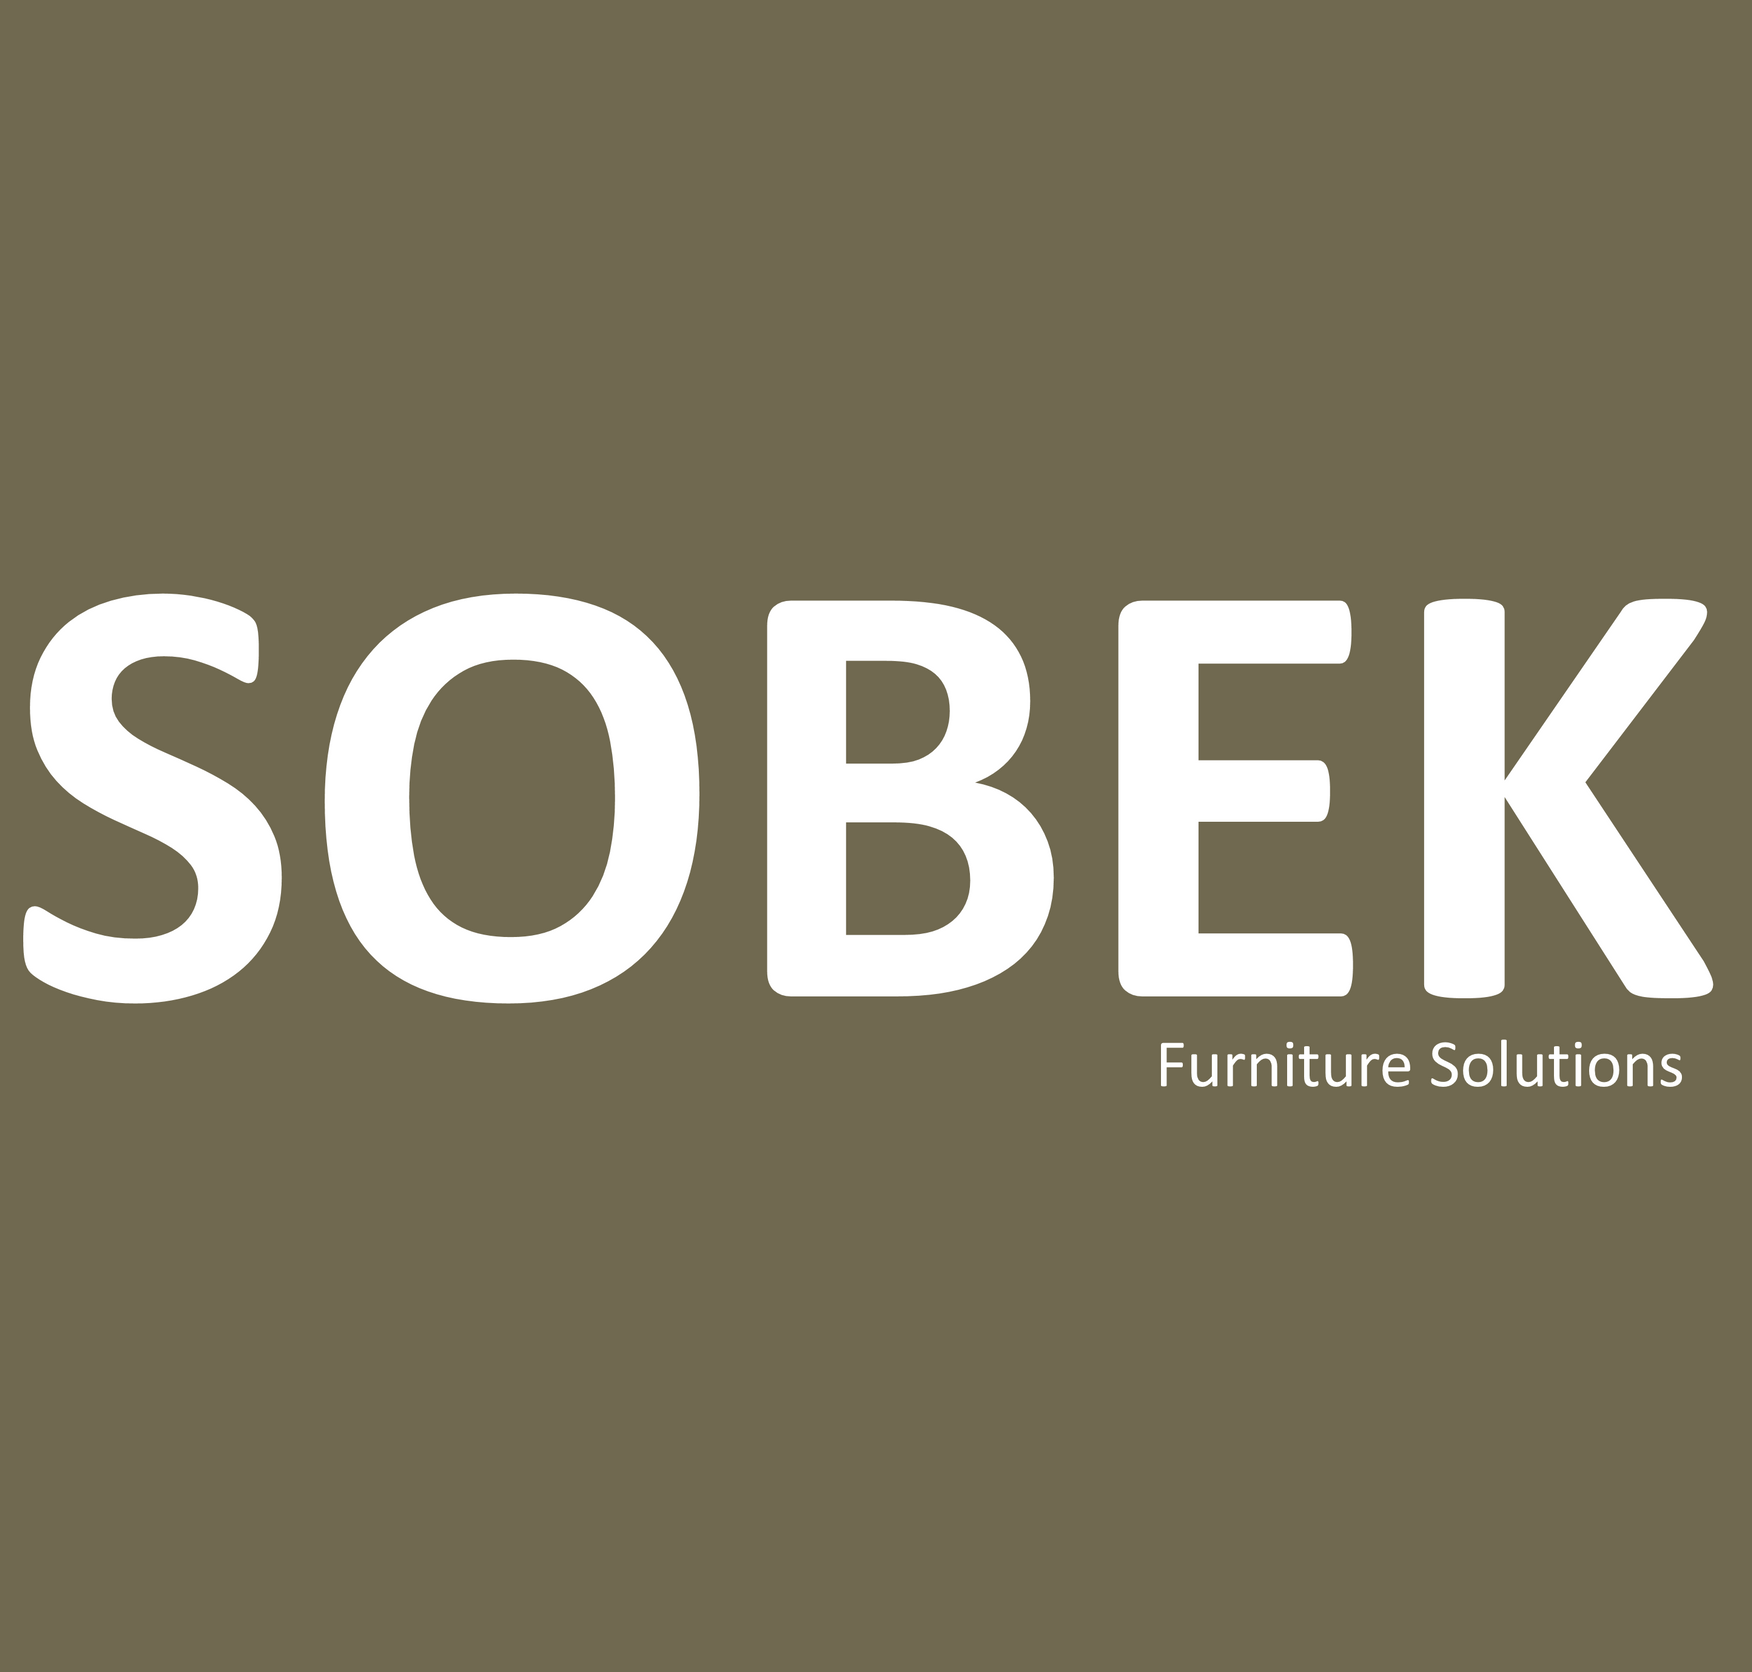 Sobek furniture